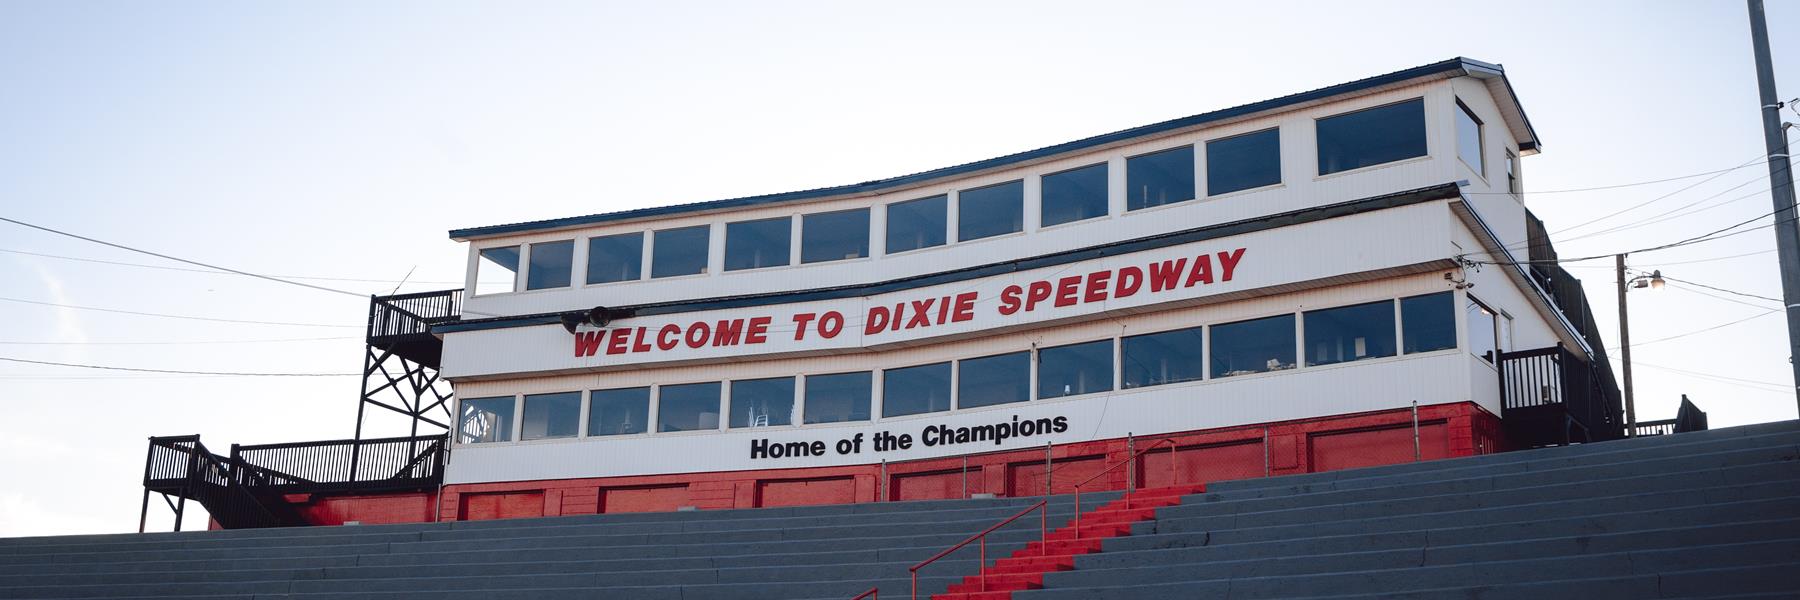 10/1/2016 - Dixie Speedway